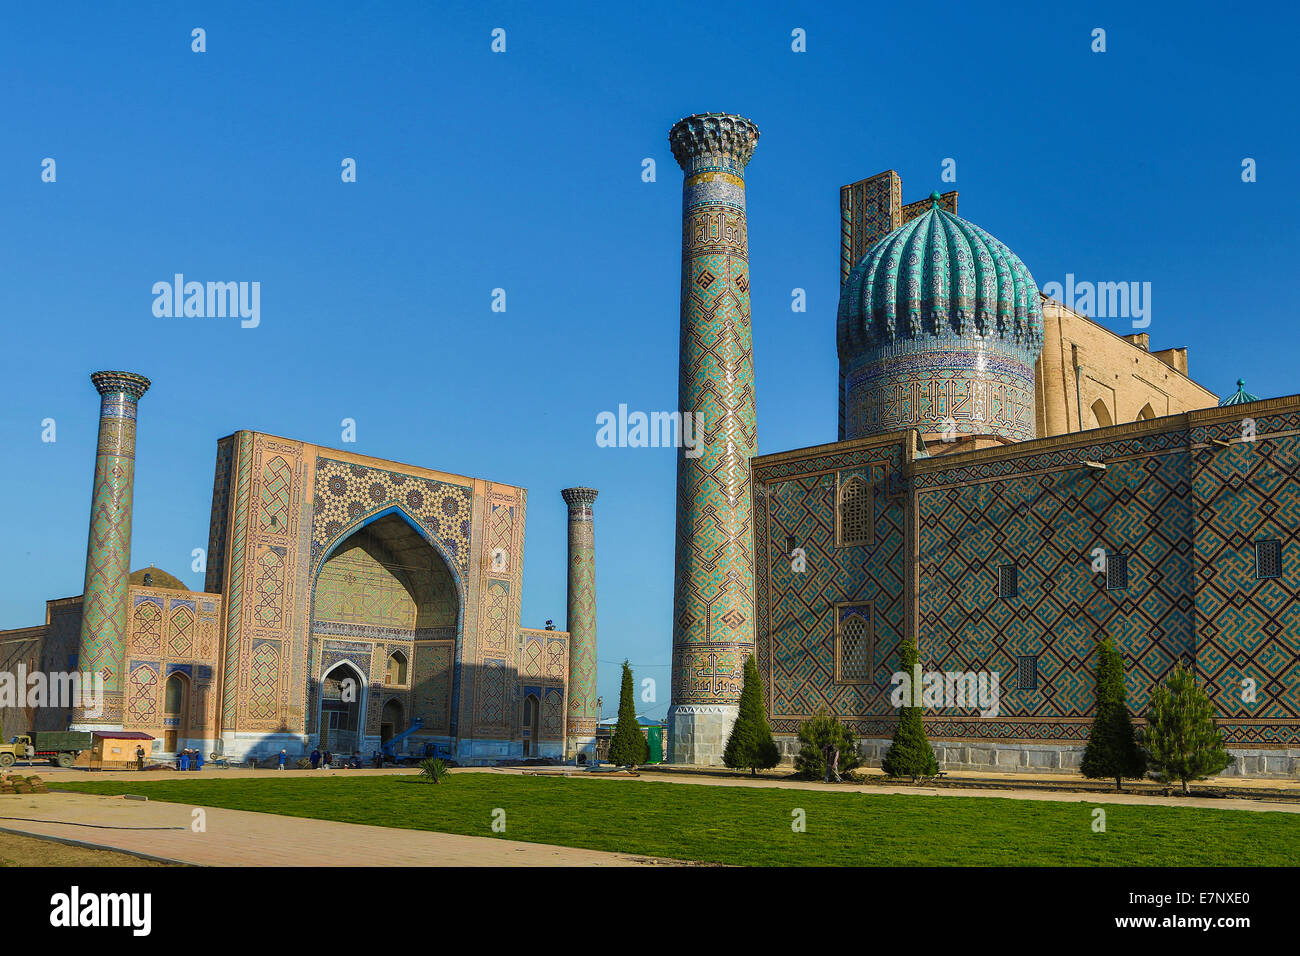 Welterbe, Amir Timur, Mausoleum, Registan, Samarkand, Stadt, Usbekistan, Zentralasien, Asien, Architektur, blau, bunt, Stockfoto